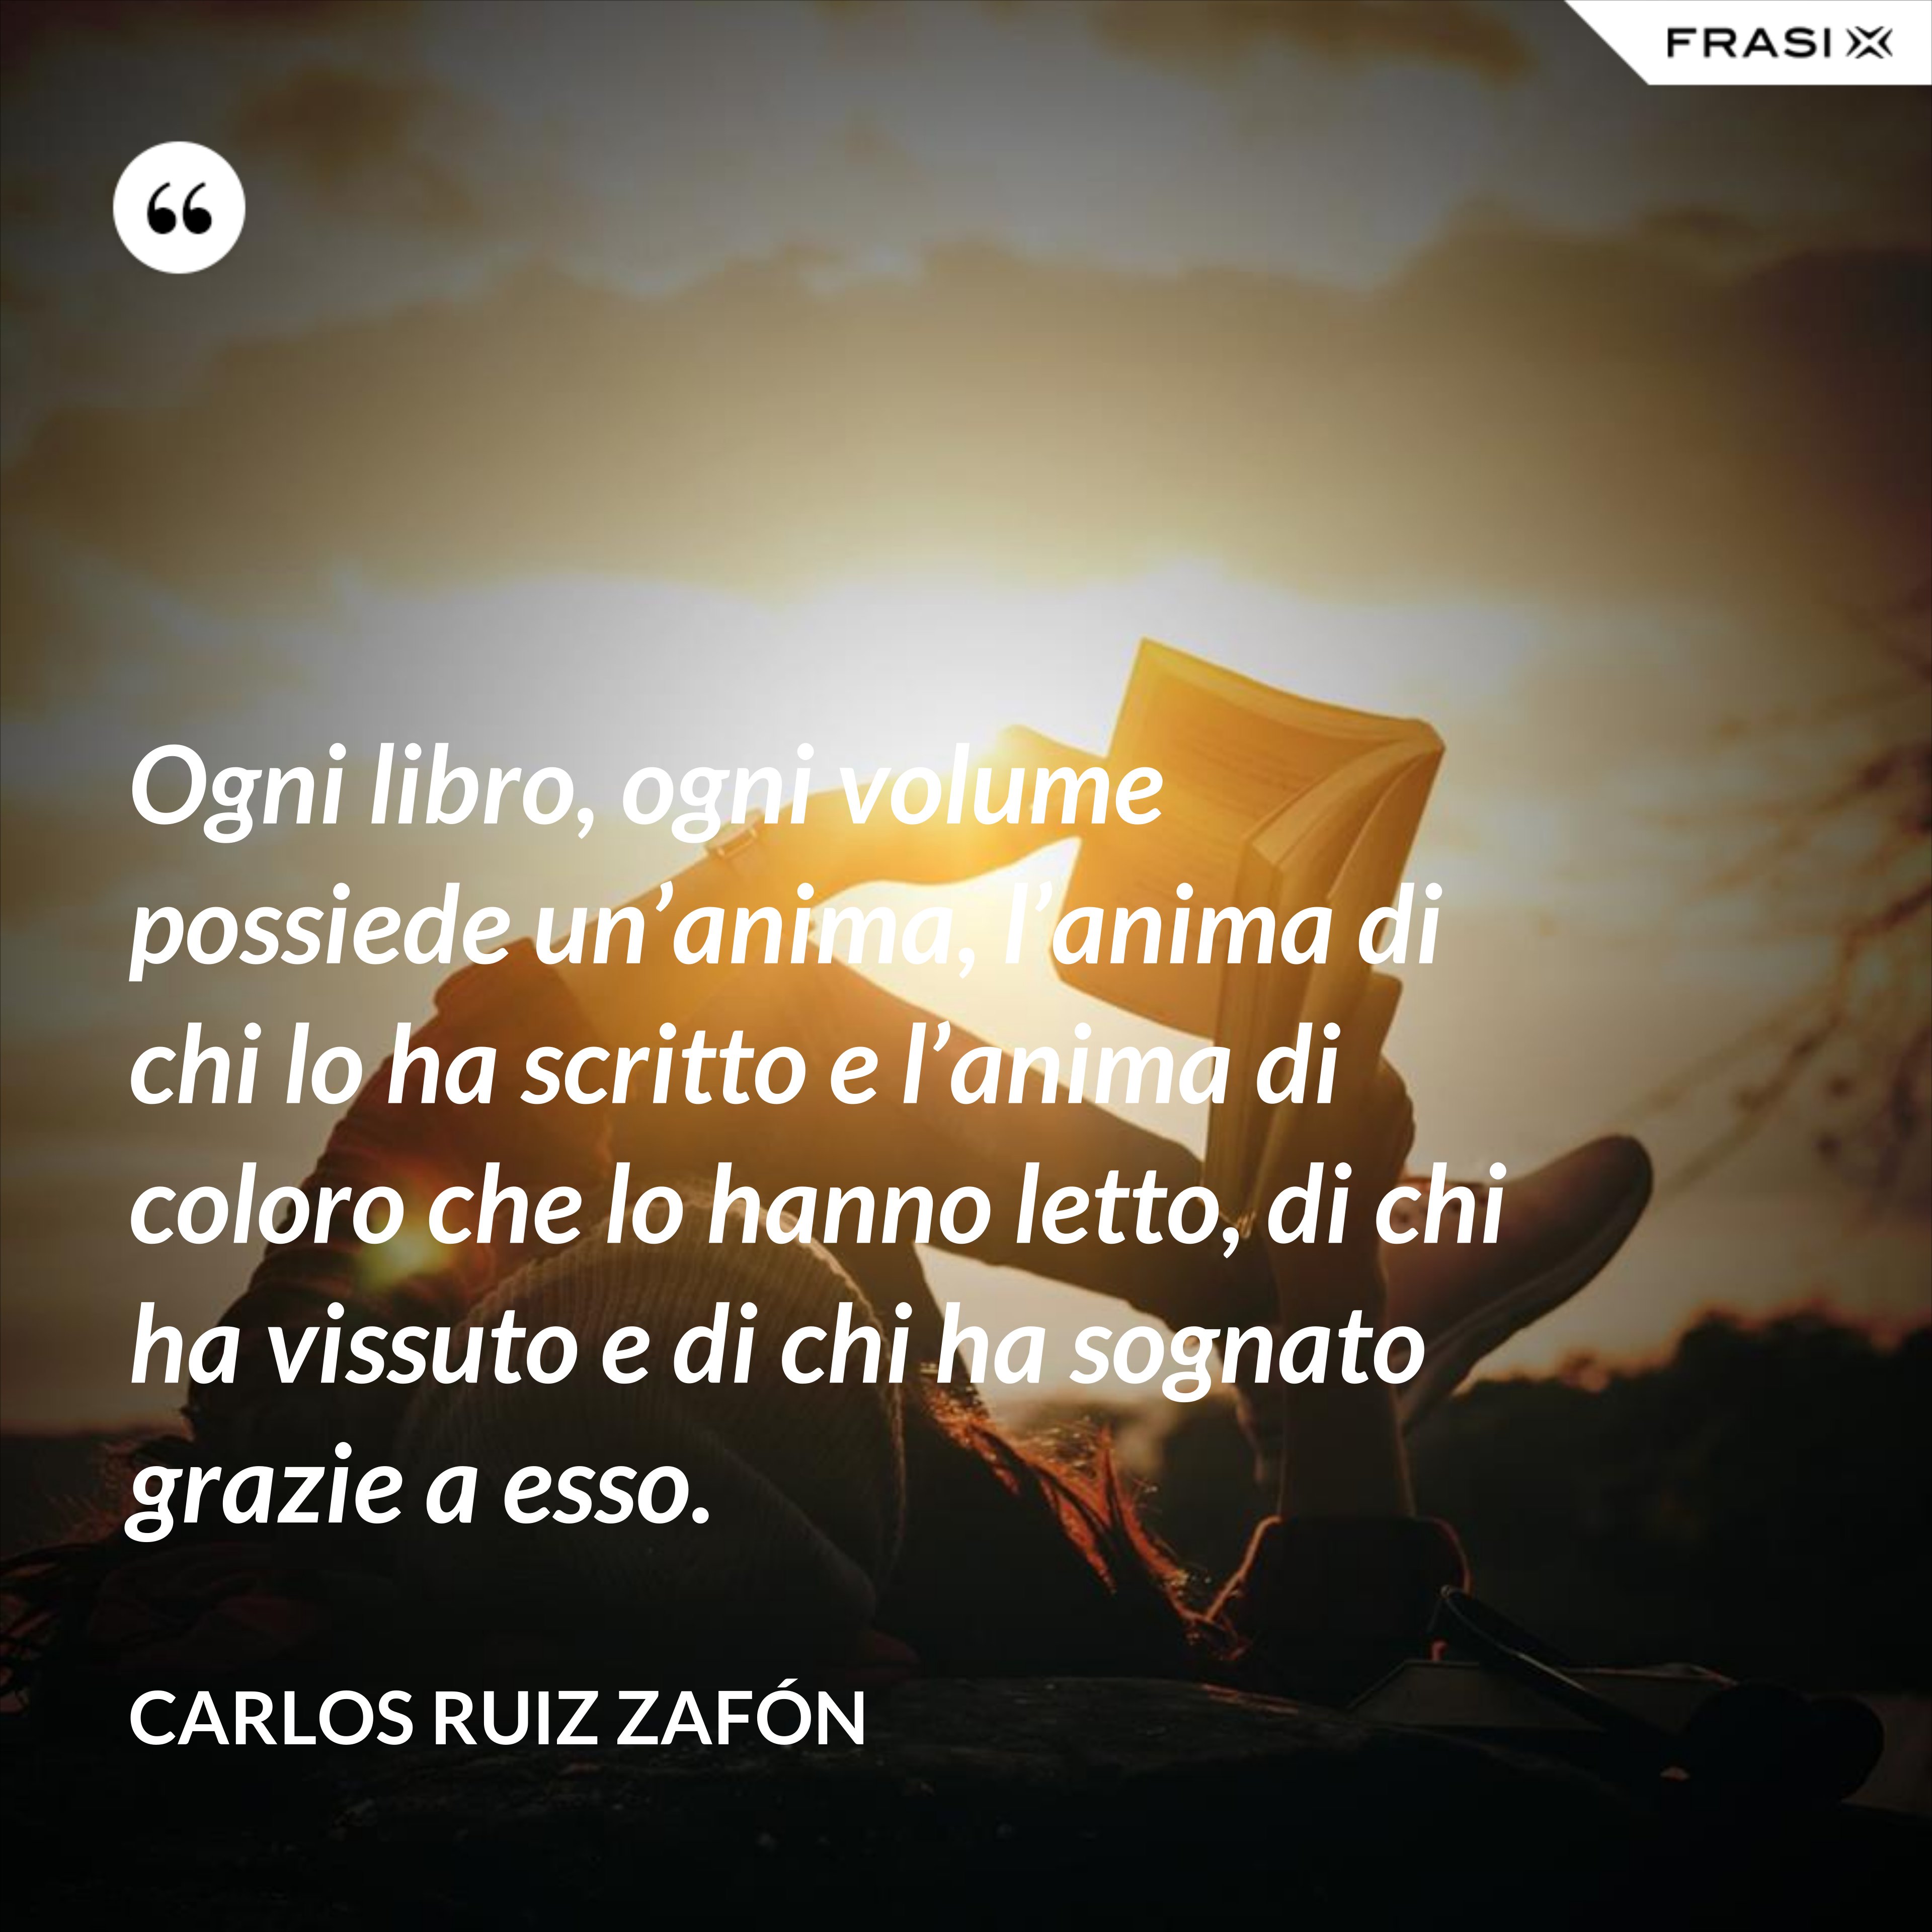 Ogni libro, ogni volume possiede un’anima, l’anima di chi lo ha scritto e l’anima di coloro che lo hanno letto, di chi ha vissuto e di chi ha sognato grazie a esso. - Carlos Ruiz Zafón